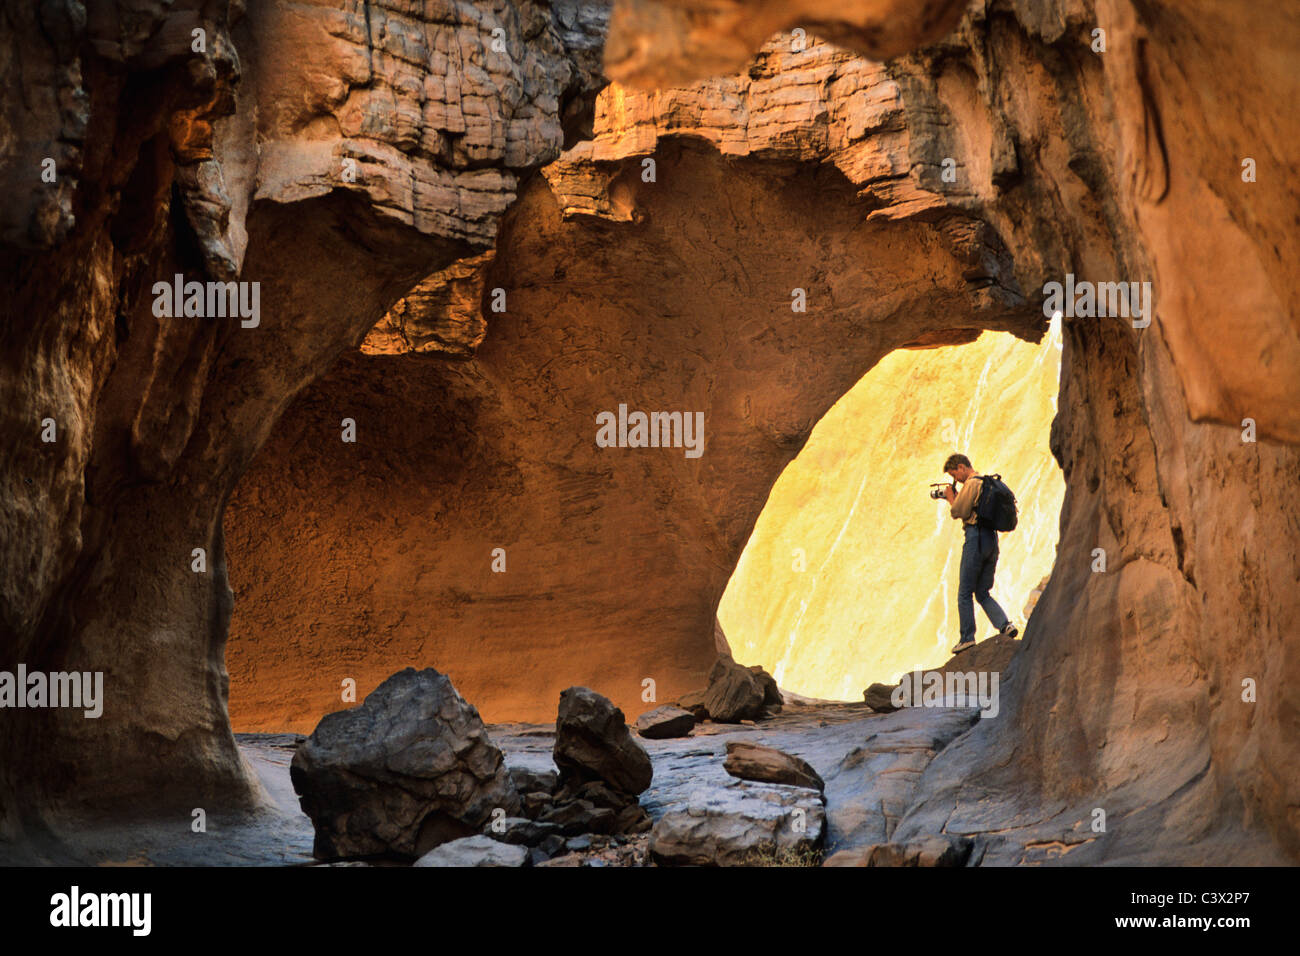 Argelia, Djanet. El Parque Nacional de Tassili n'Ajjer. Sitio de Patrimonio Mundial de la UNESCO. Turista hacer video/film. El desierto del Sahara. Foto de stock